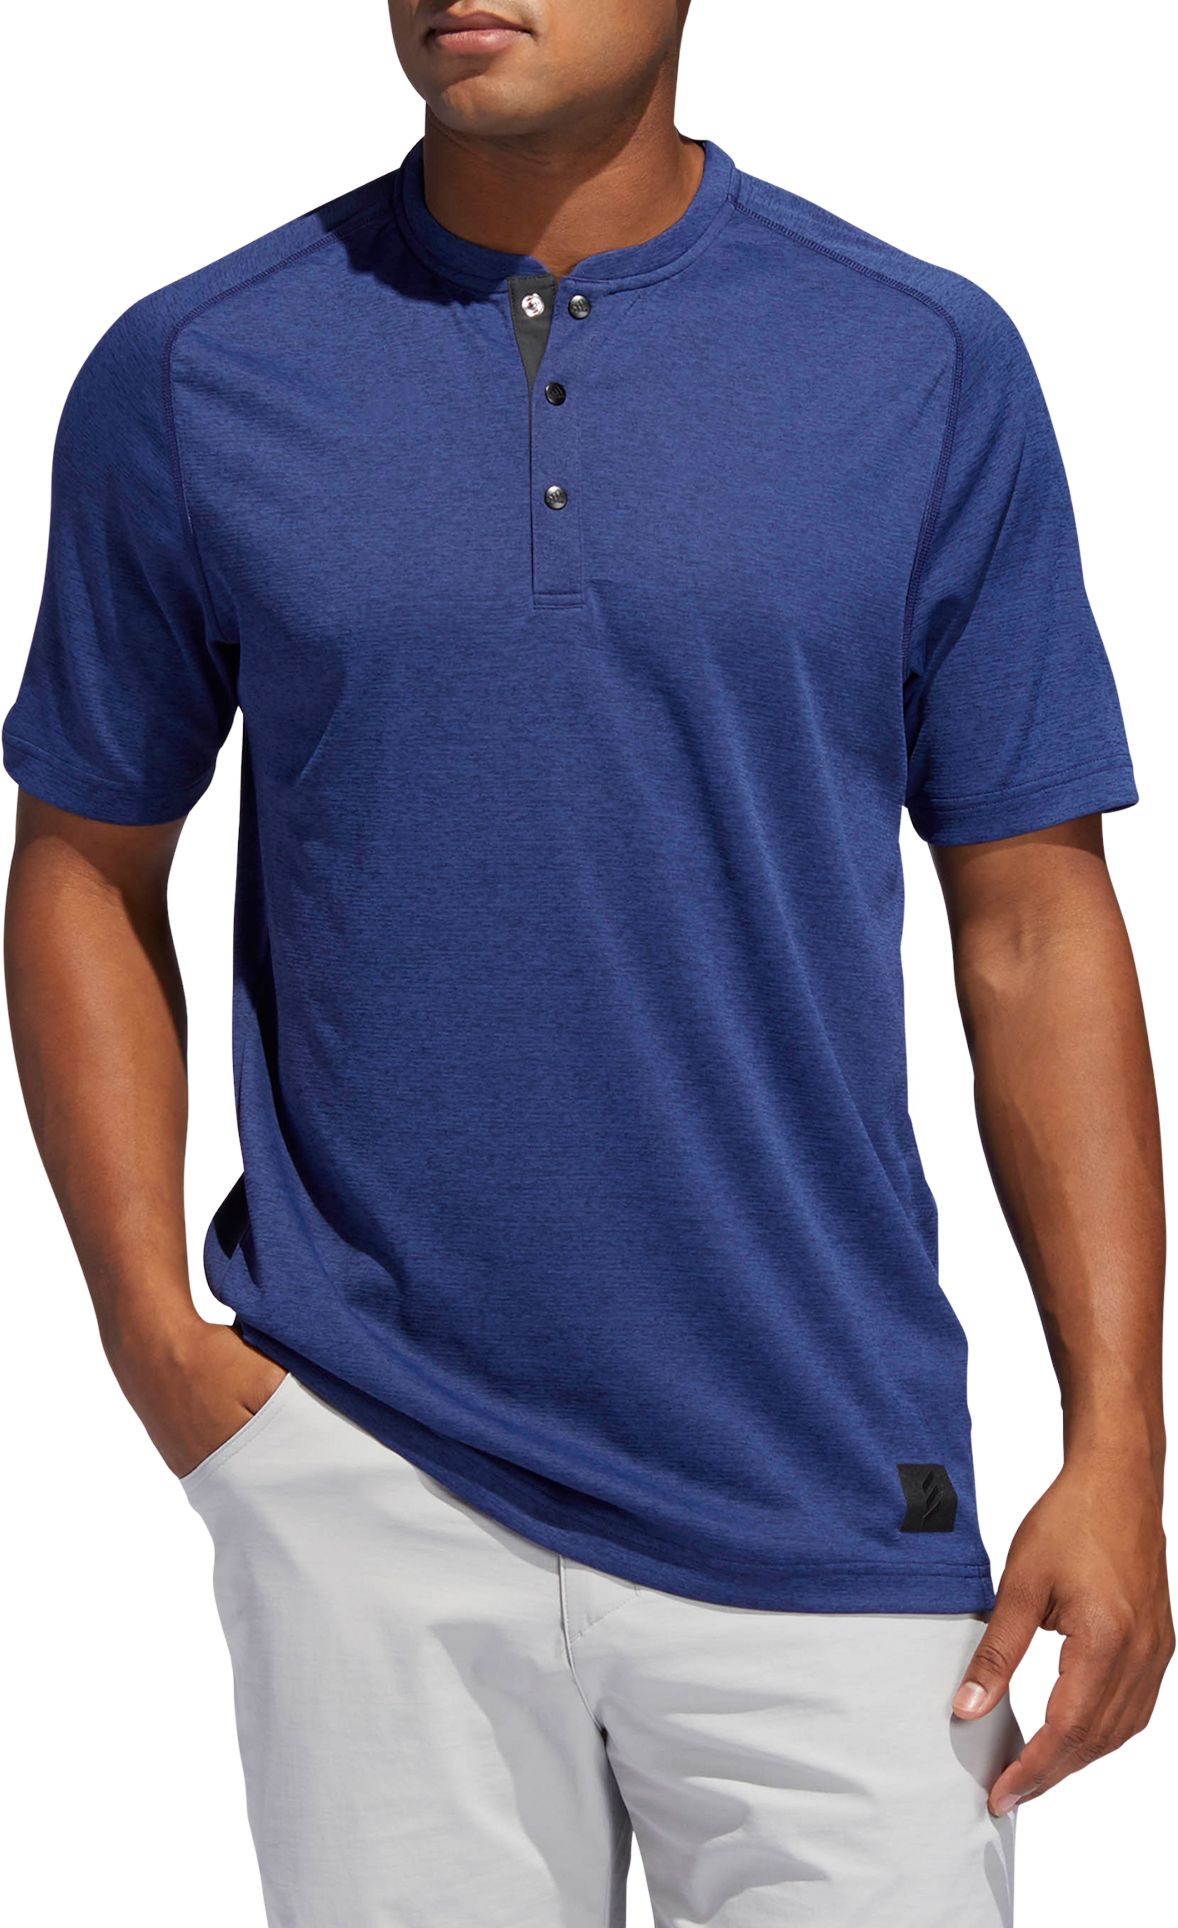 Adicross Transition Henley Golf Shirt 